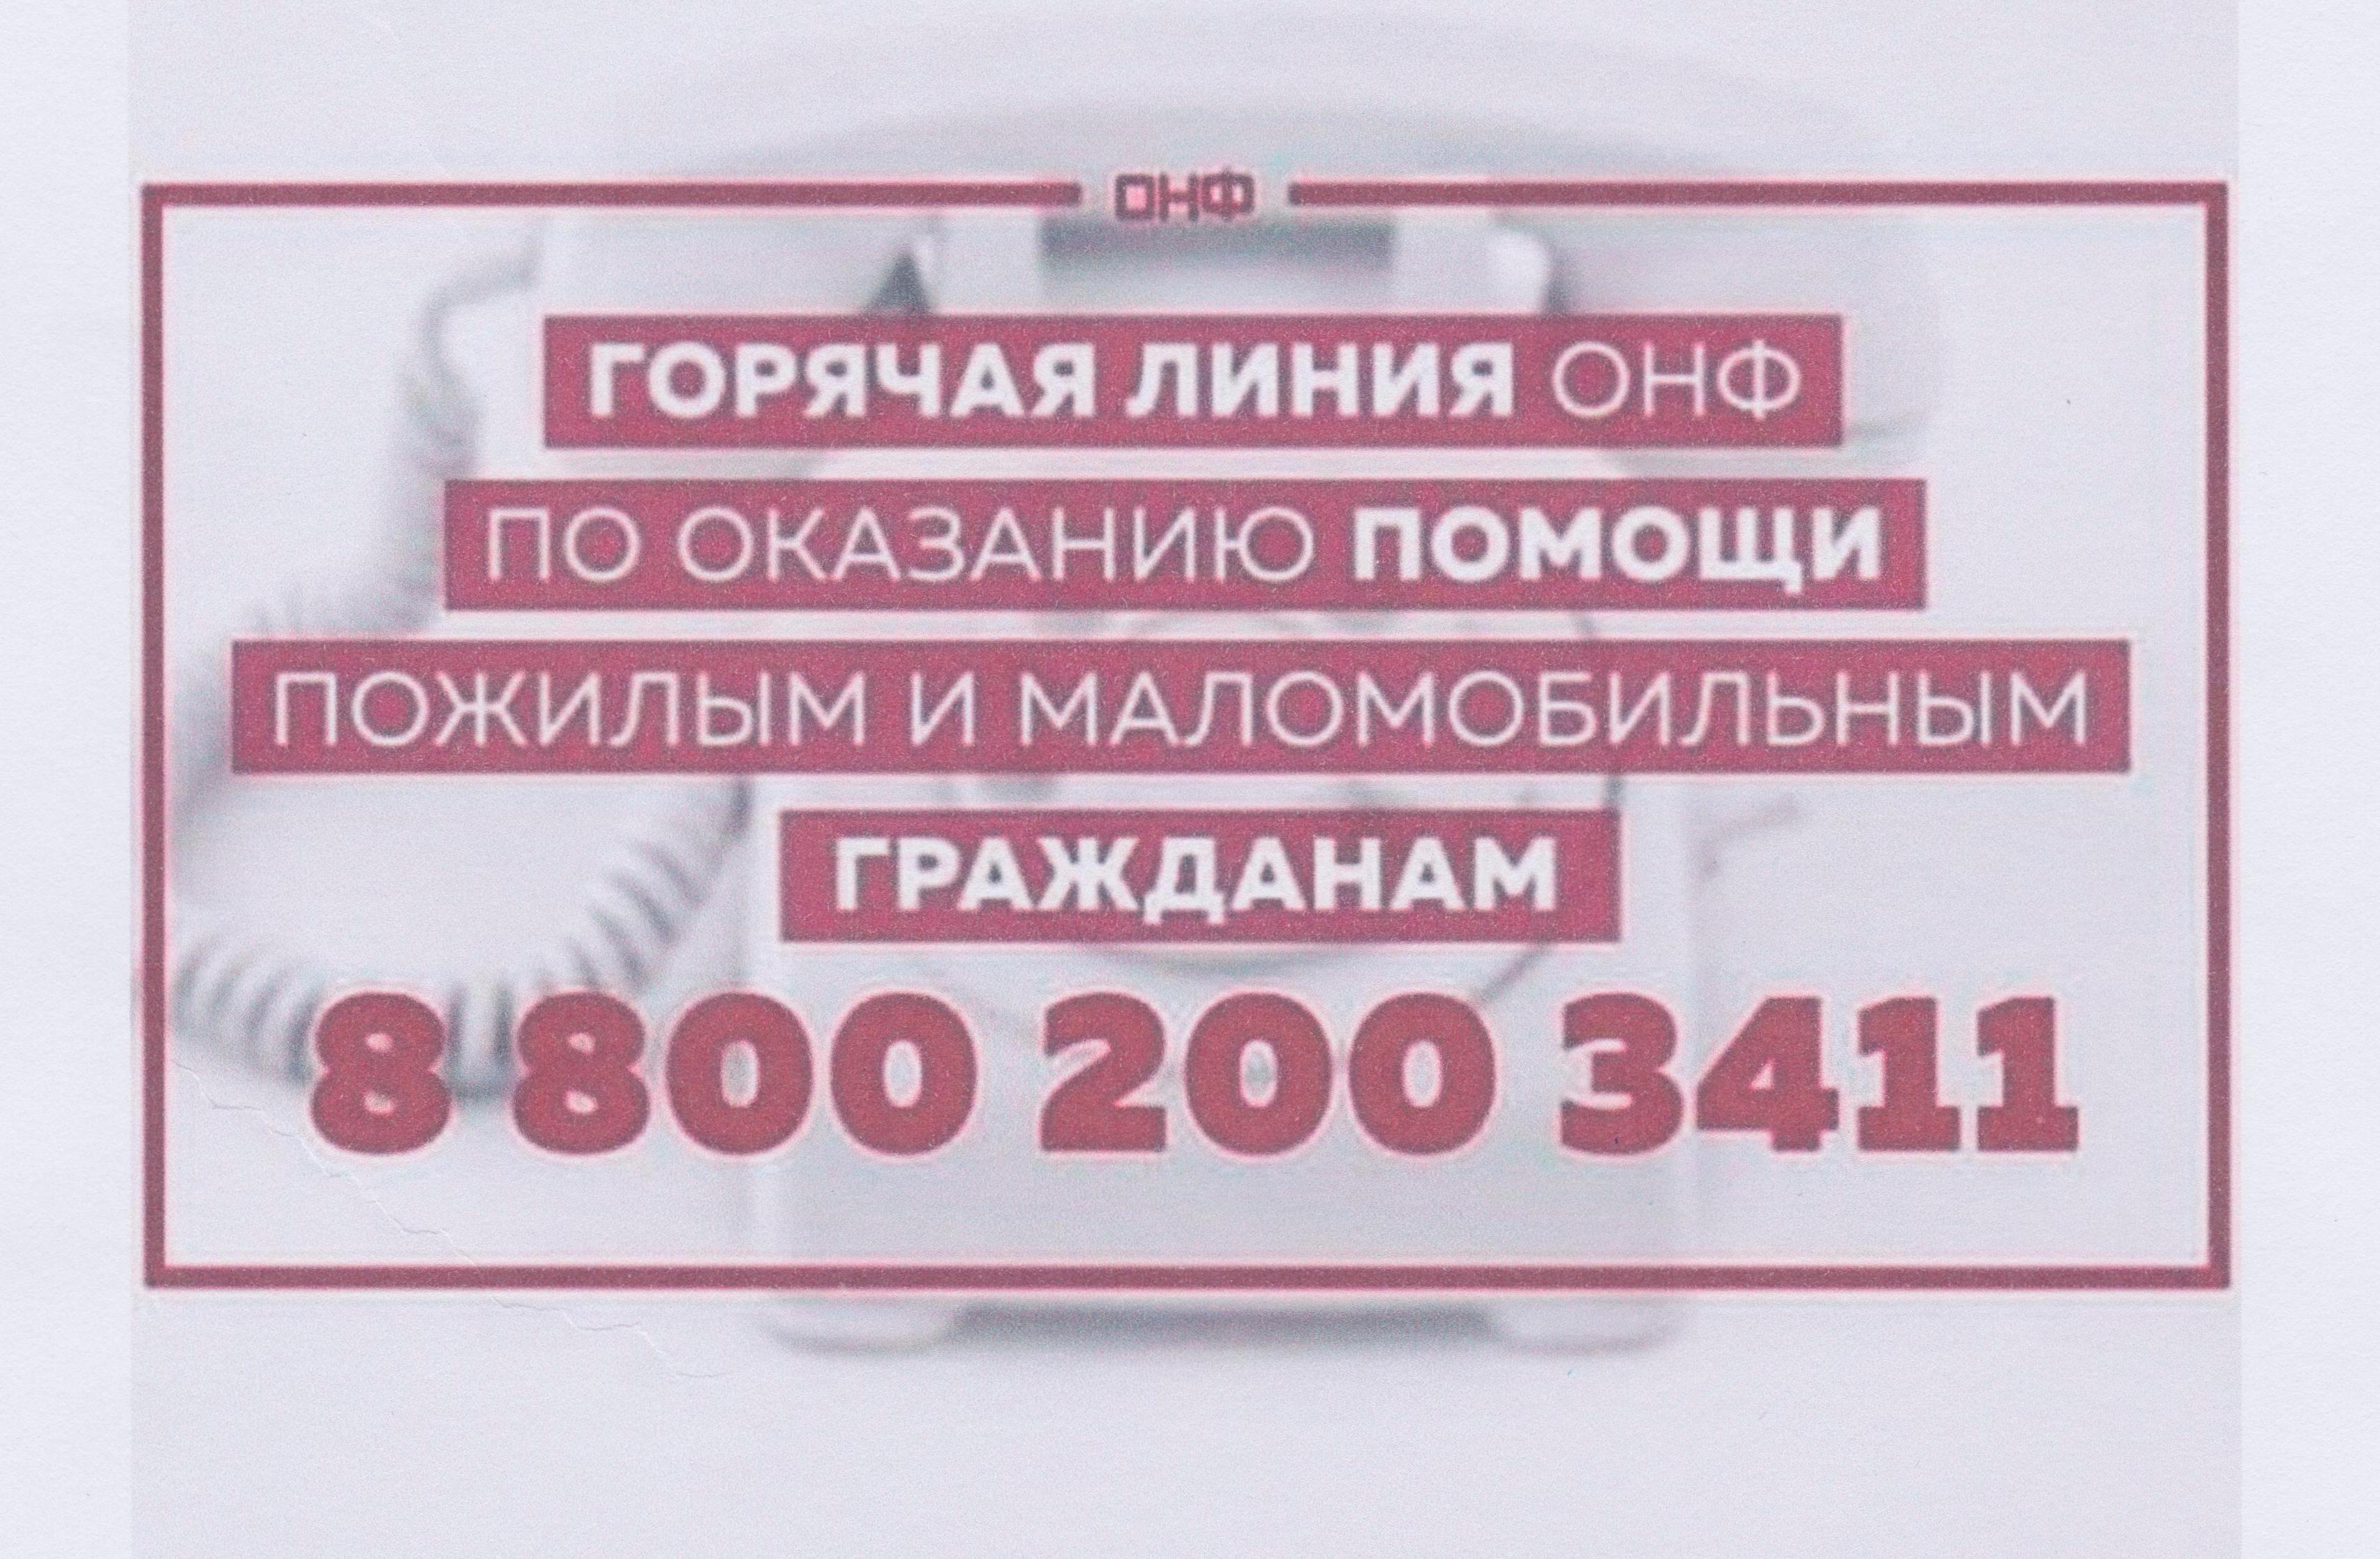 Штаб помощи пожилым людям на время коронавируса начал работу в Забайкальском крае